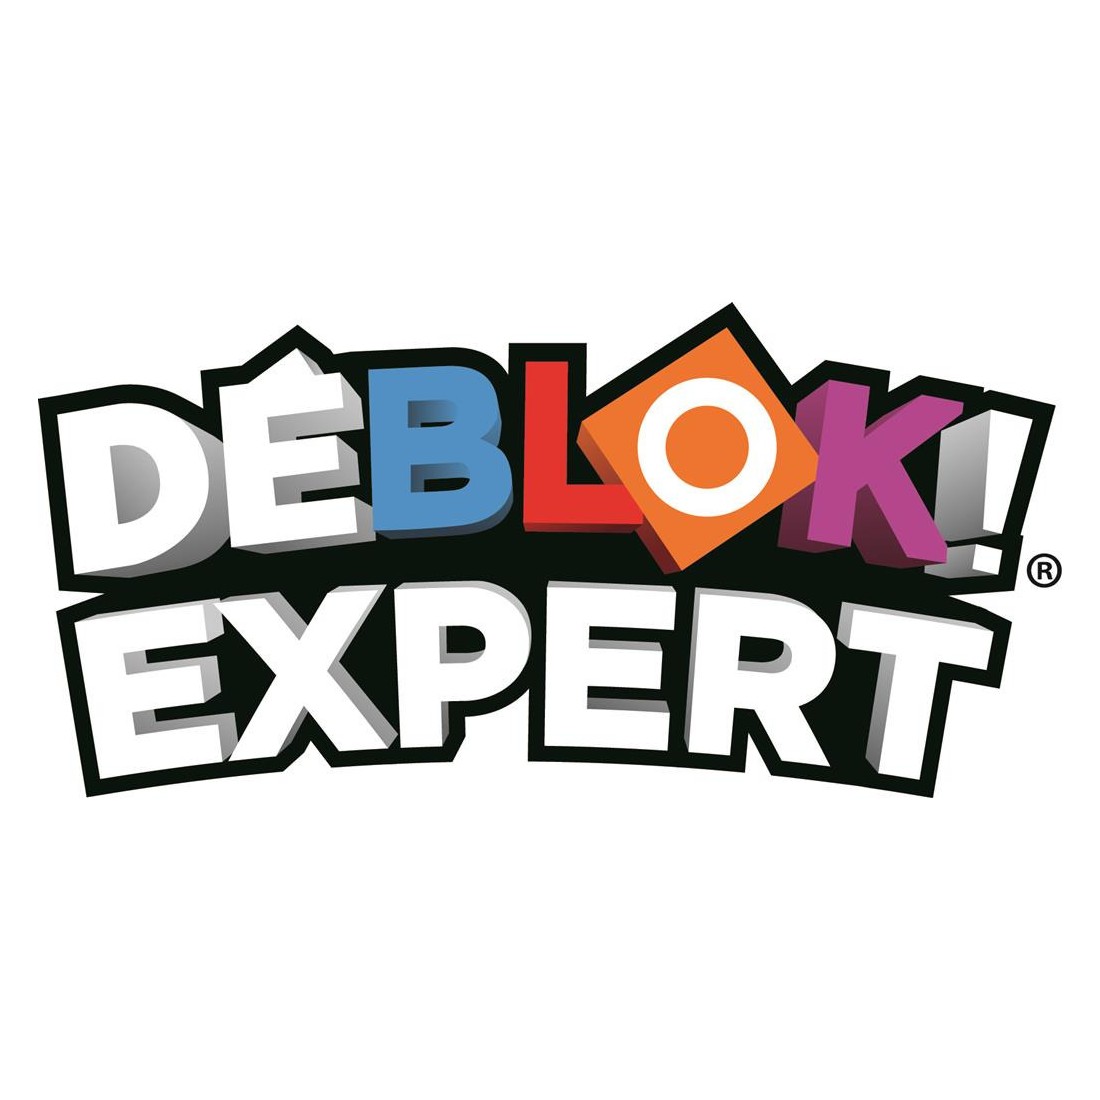 Déblok Duo - Un jeu Fox Mind - Acheter sur la boutique BCD JEUX